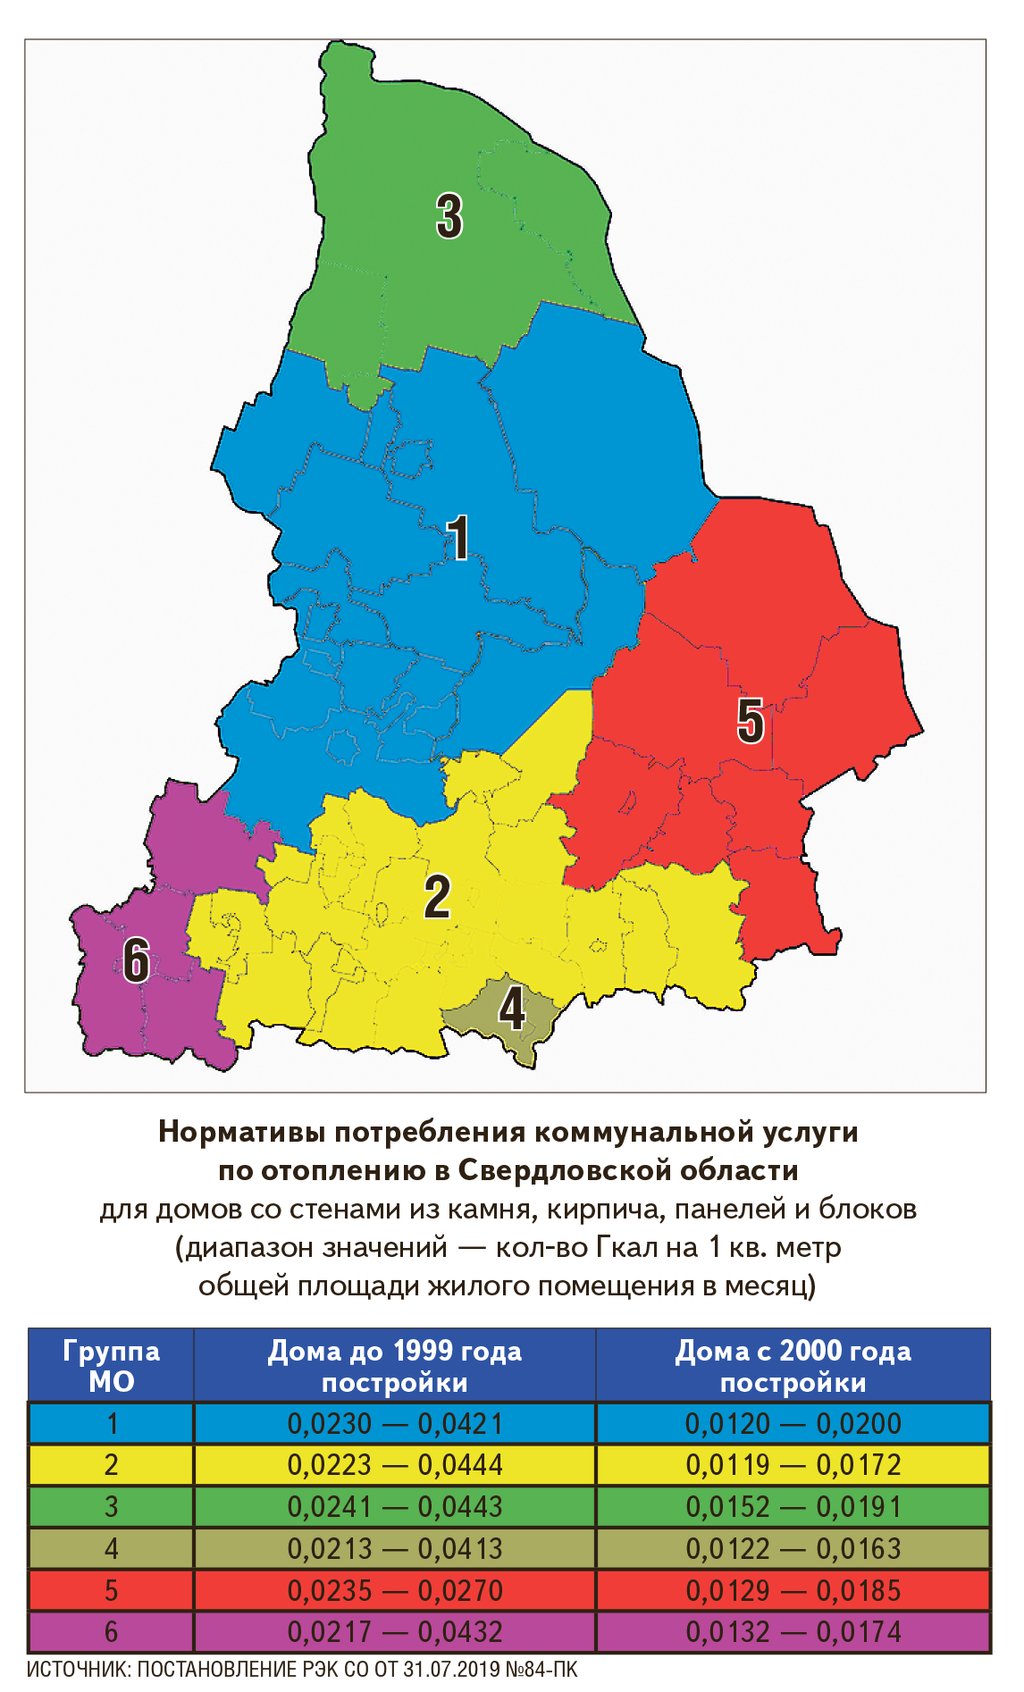 В Свердловской области утверждены нормативы потребления коммунальной услуги по отоплению